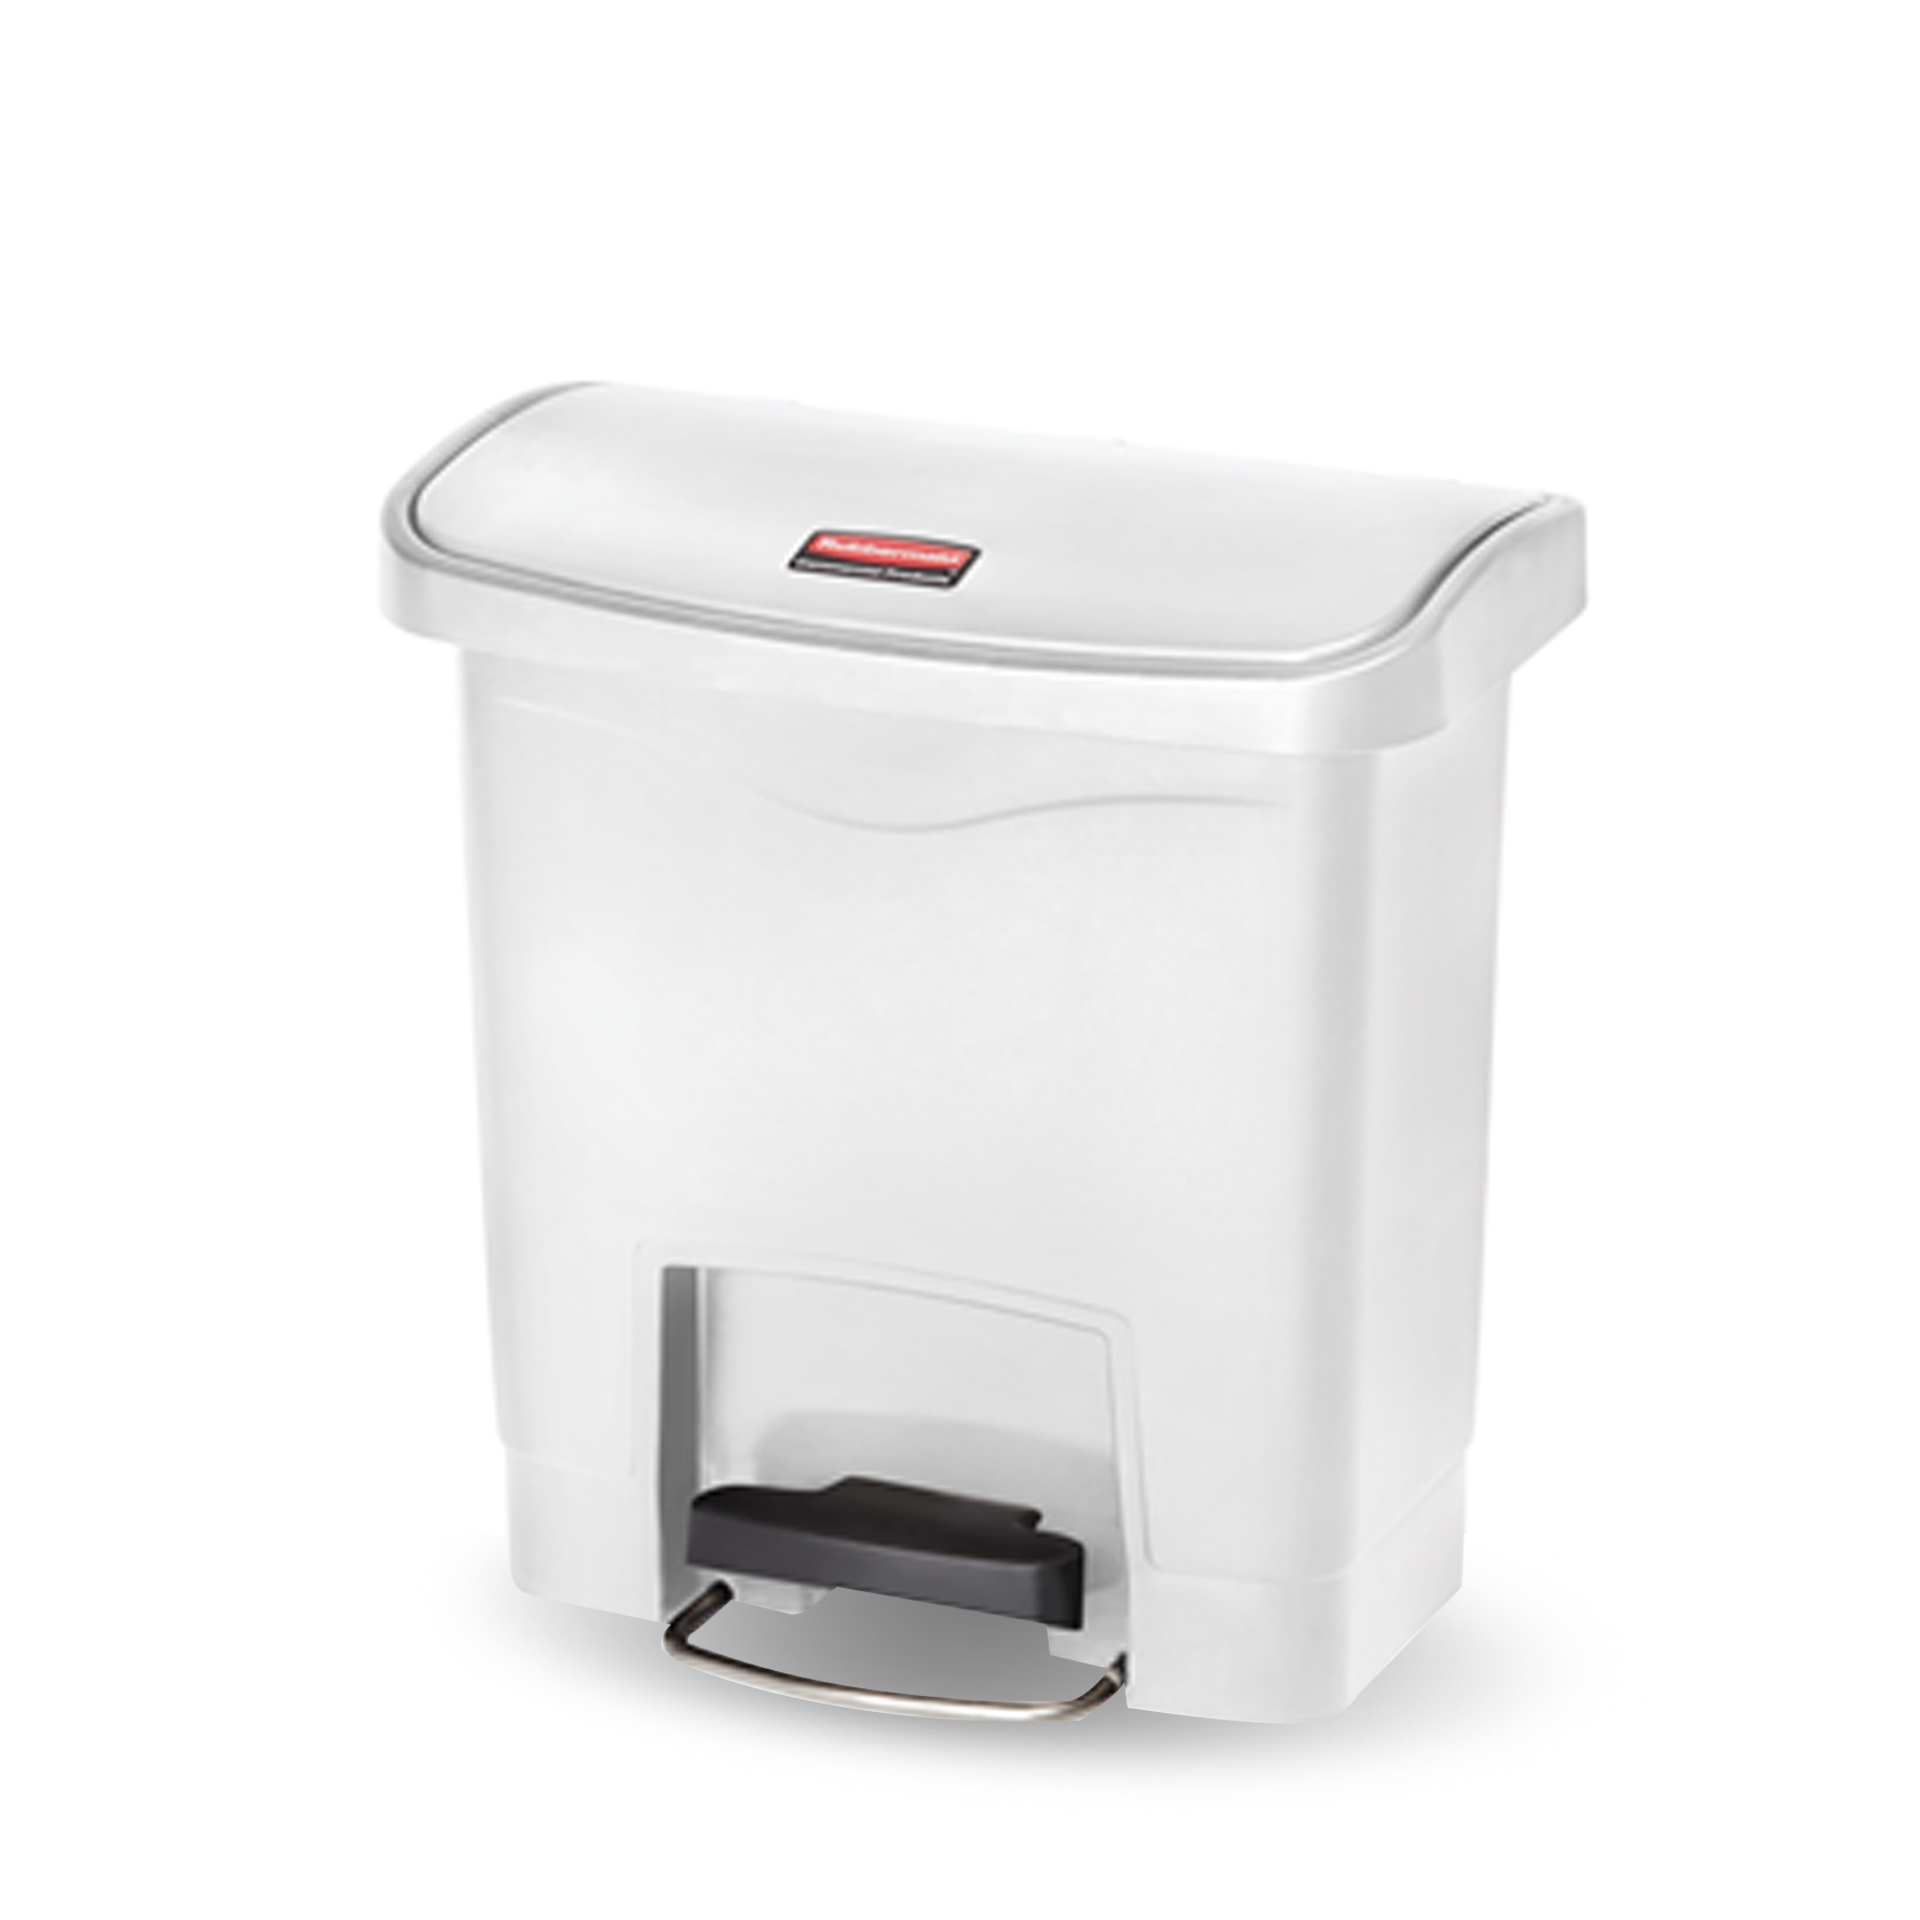 ถังขยะแบบเท้าเหยียบ Slim Jim® Step-On Container ขนาด 15 ลิตร สีขาว